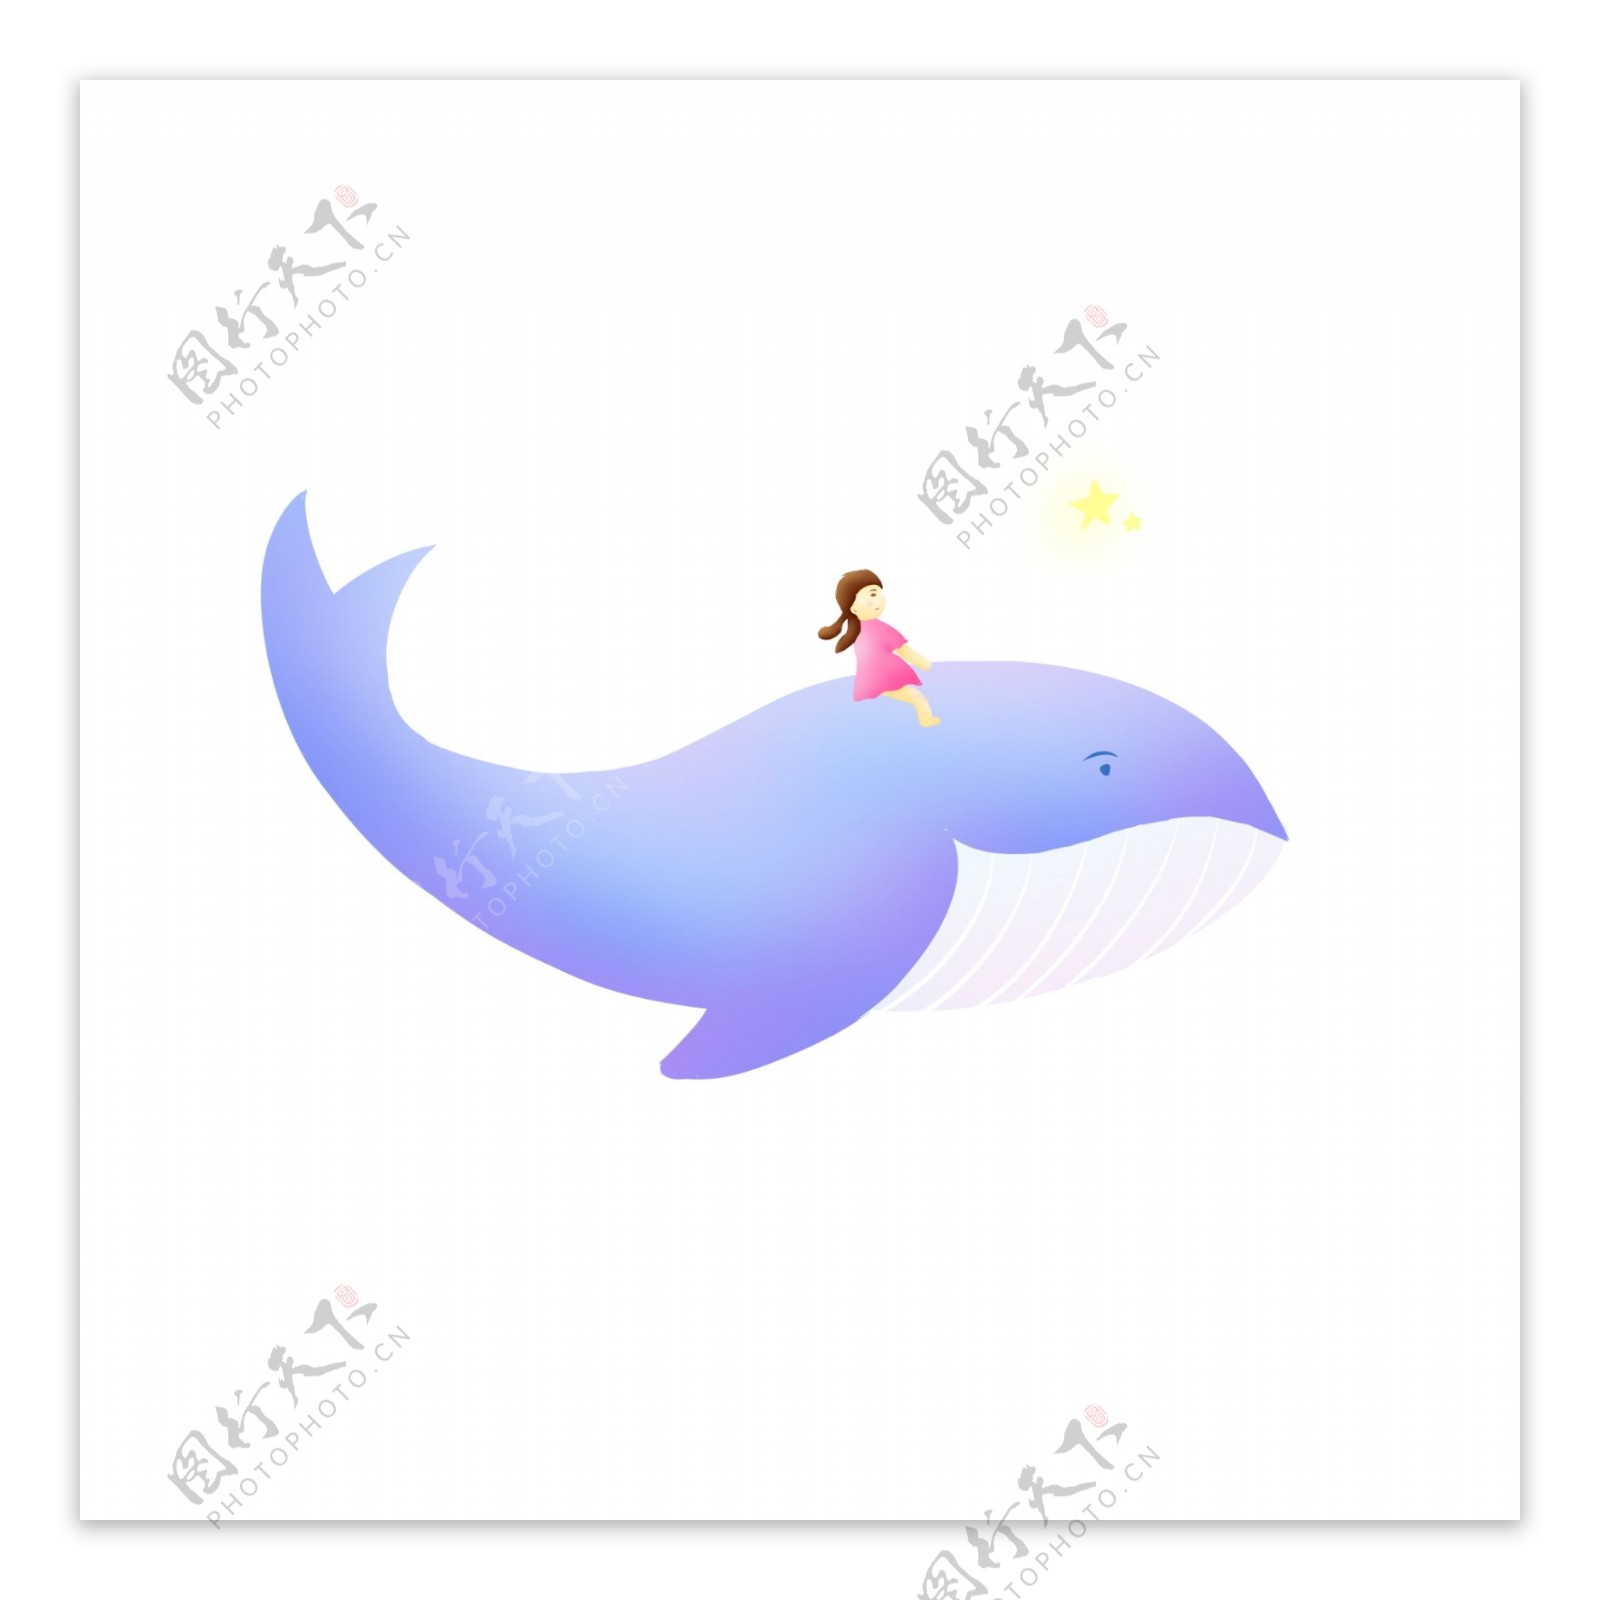 鲸鱼与女孩手绘梦幻生物元素可商用